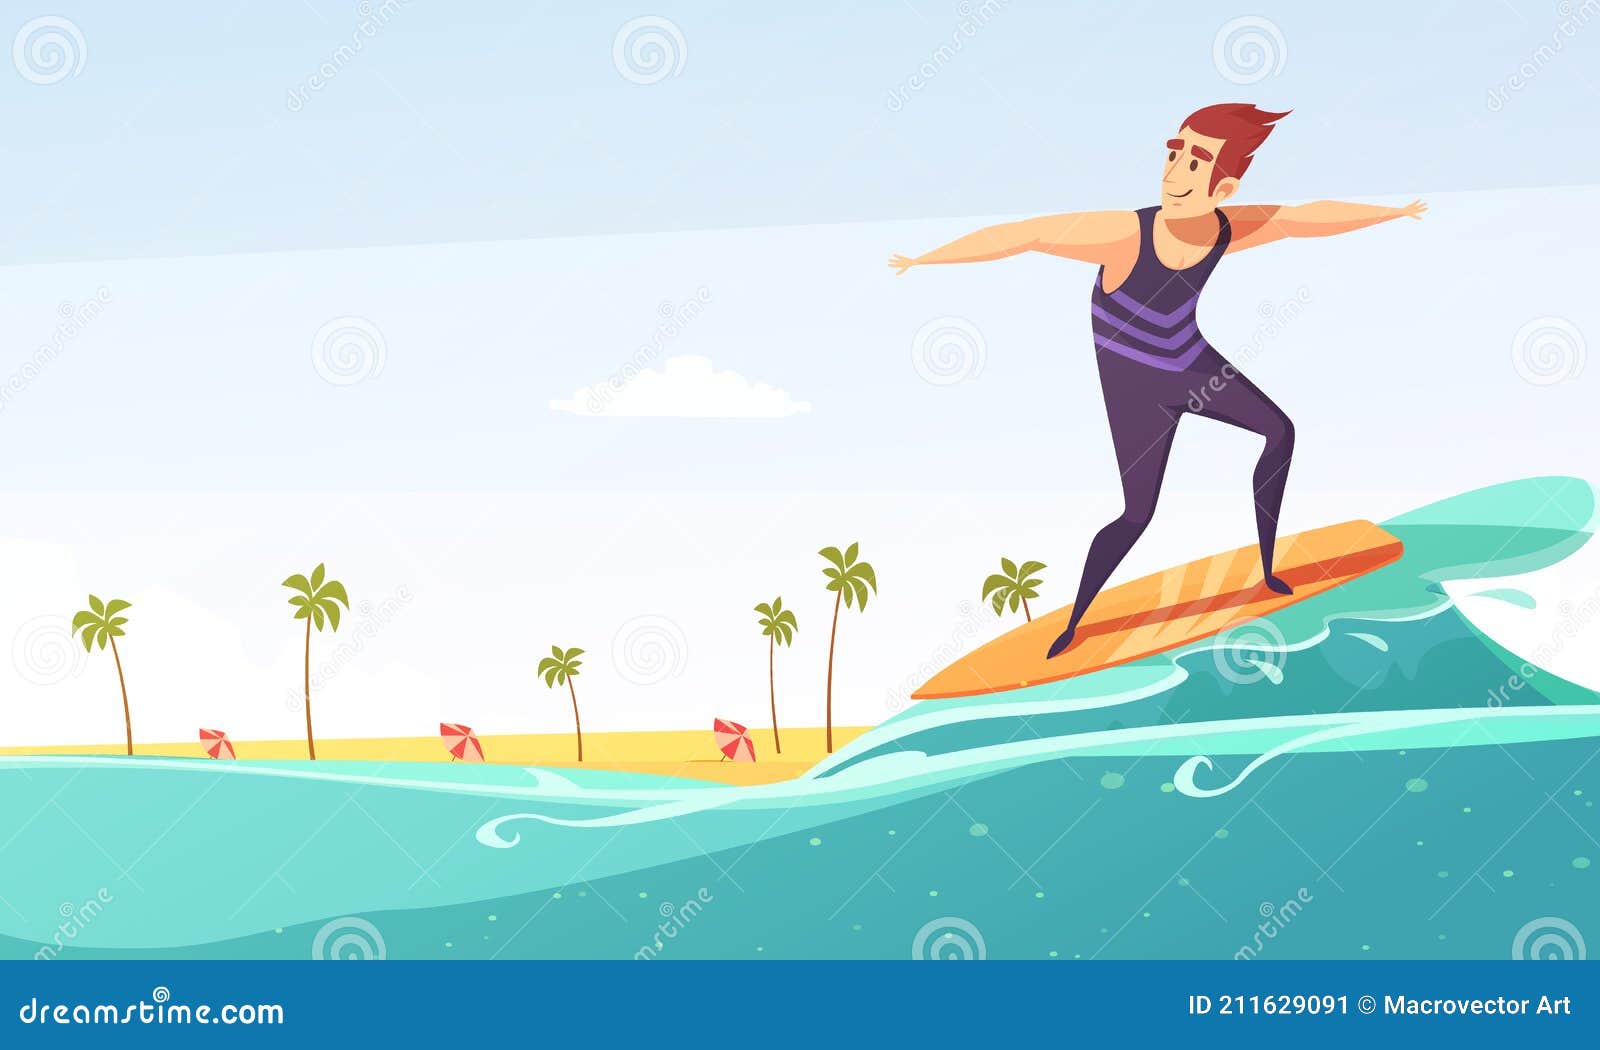 Póster De Dibujos Animados De La Playa Tropical De Surf Ilustración del  Vector - Ilustración de standing, exterior: 211629091